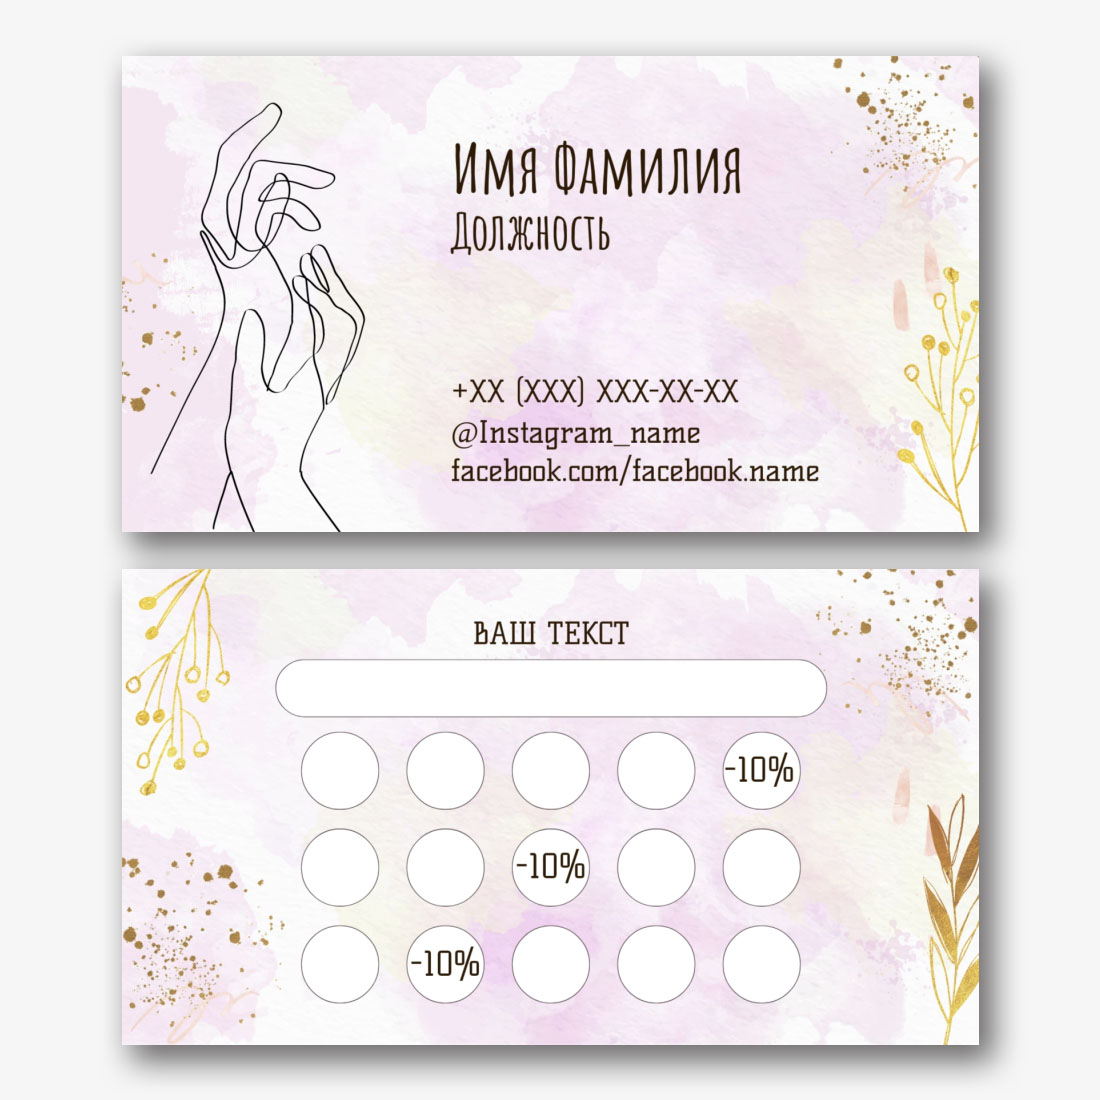 Бесплатный шаблон стильной визитки косметолога | Vizitka.com | ID168617